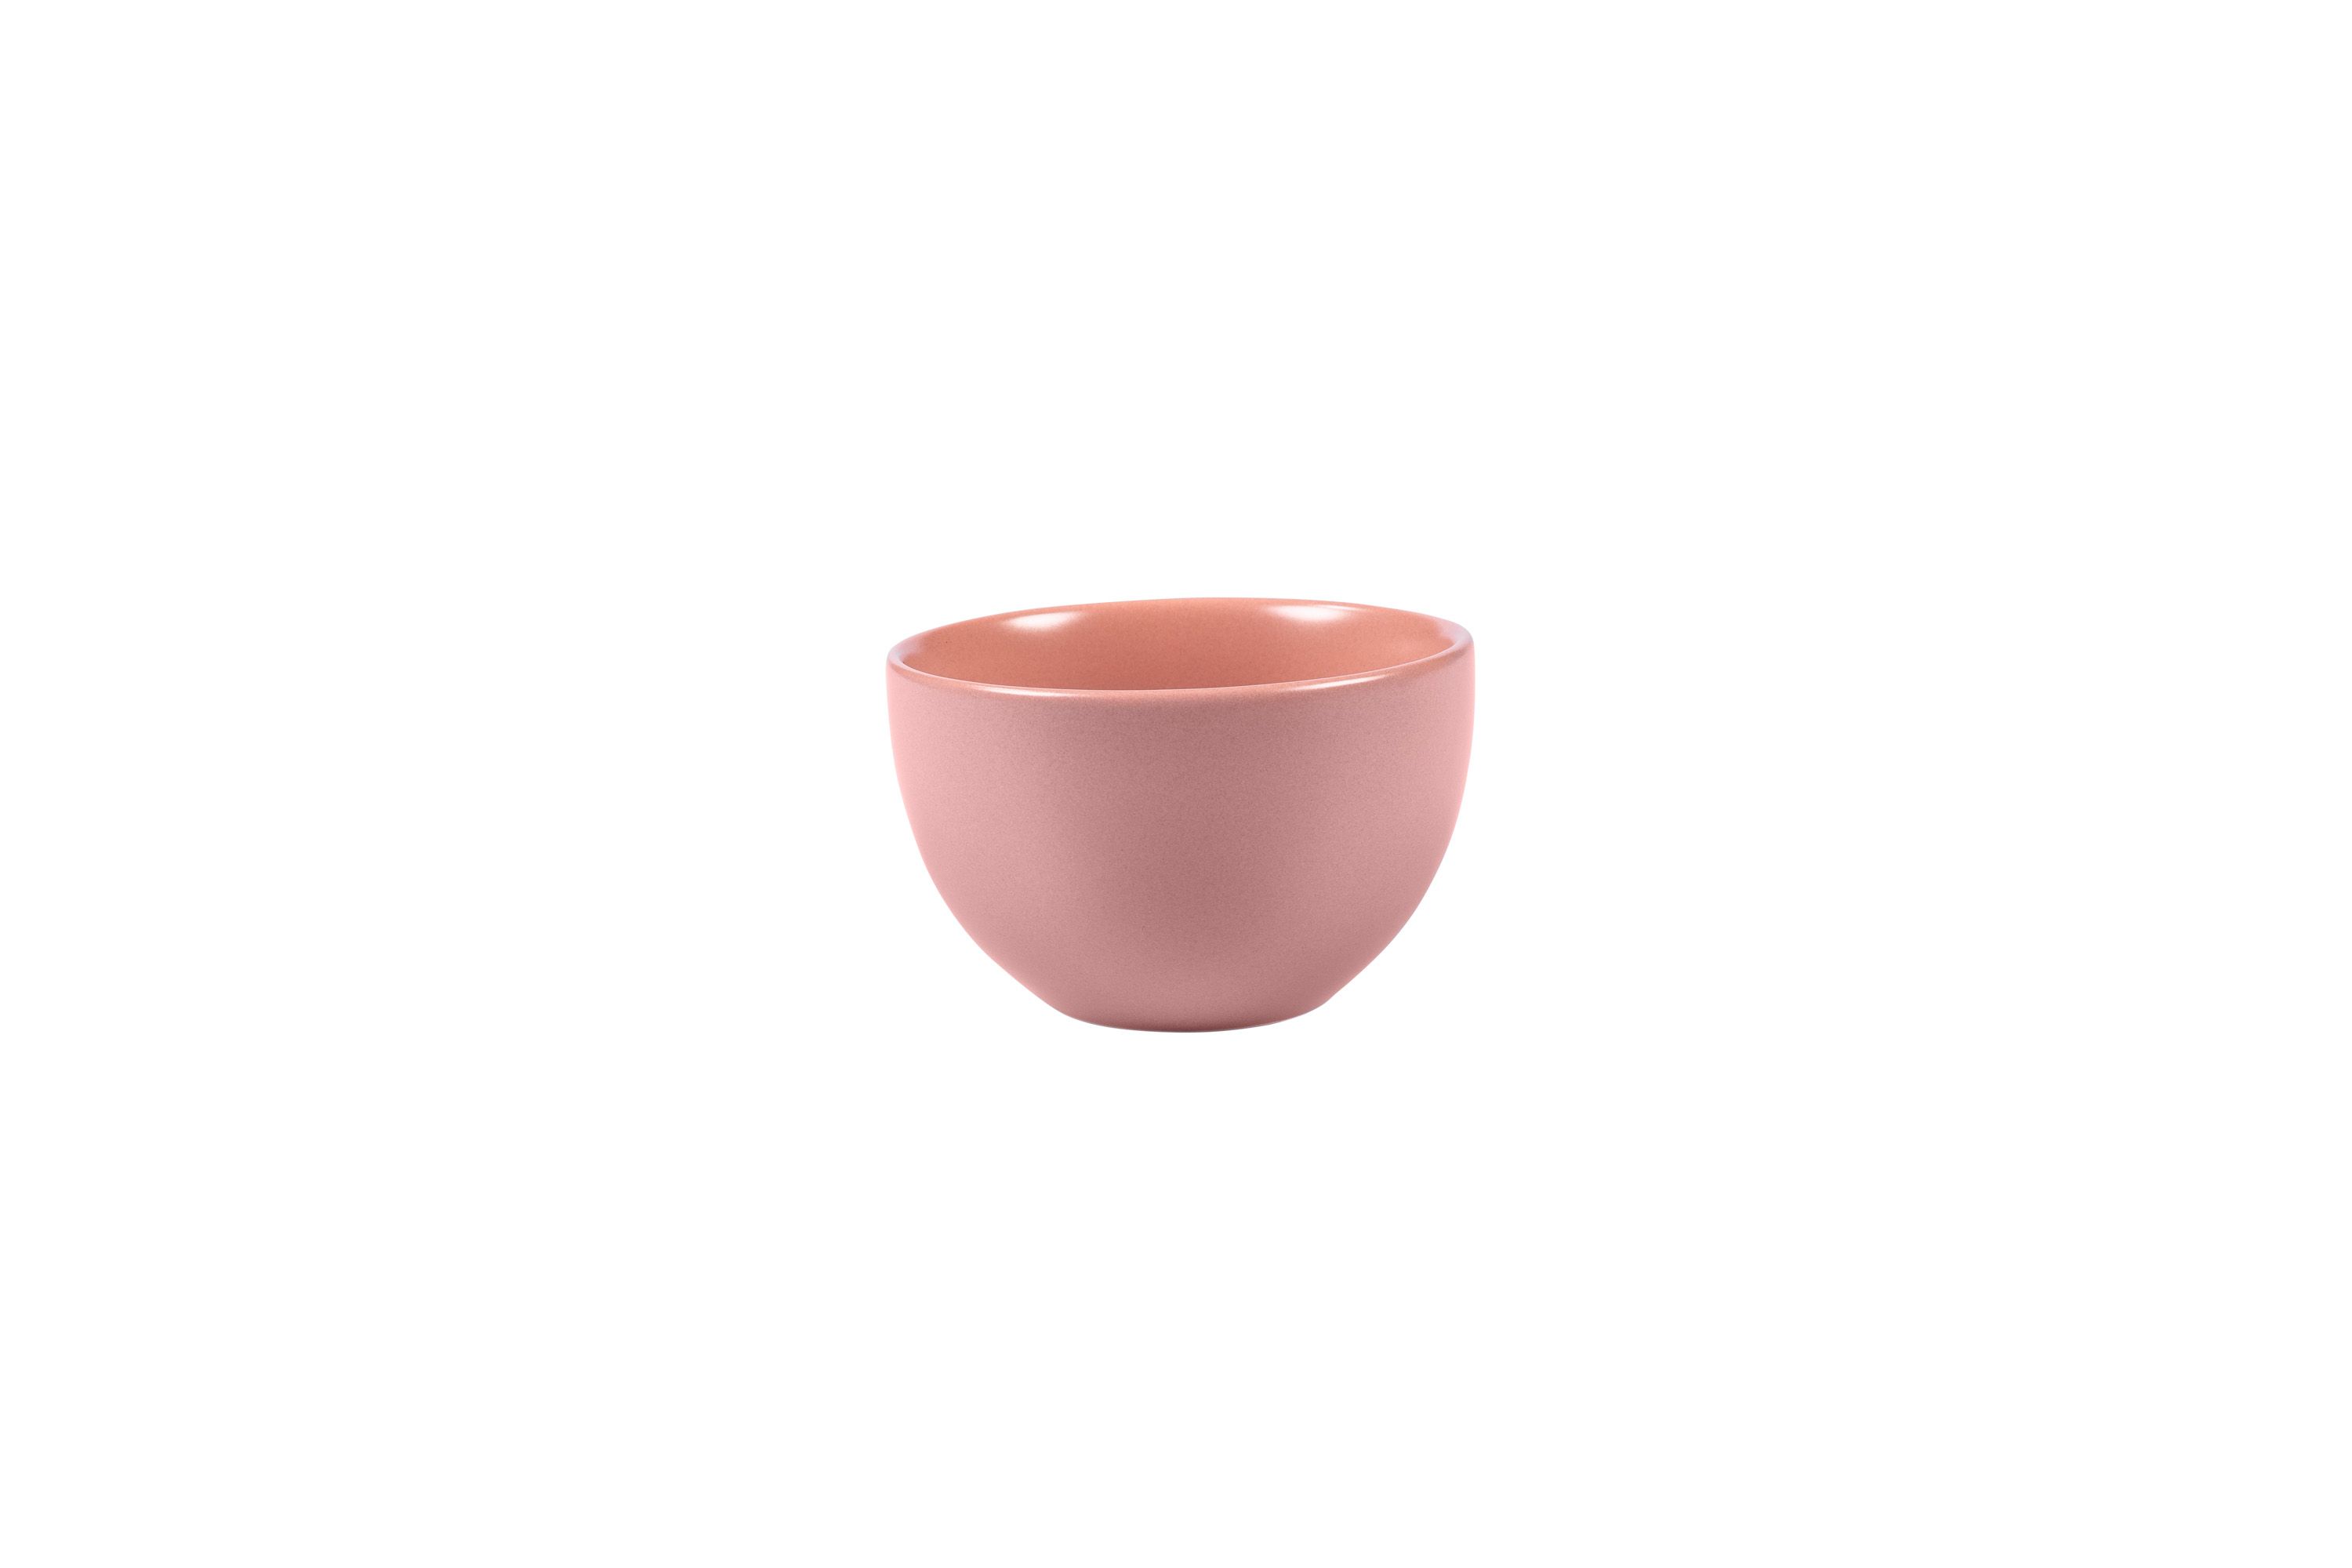 Eine kleine, rosa Stoneware-Schüssel